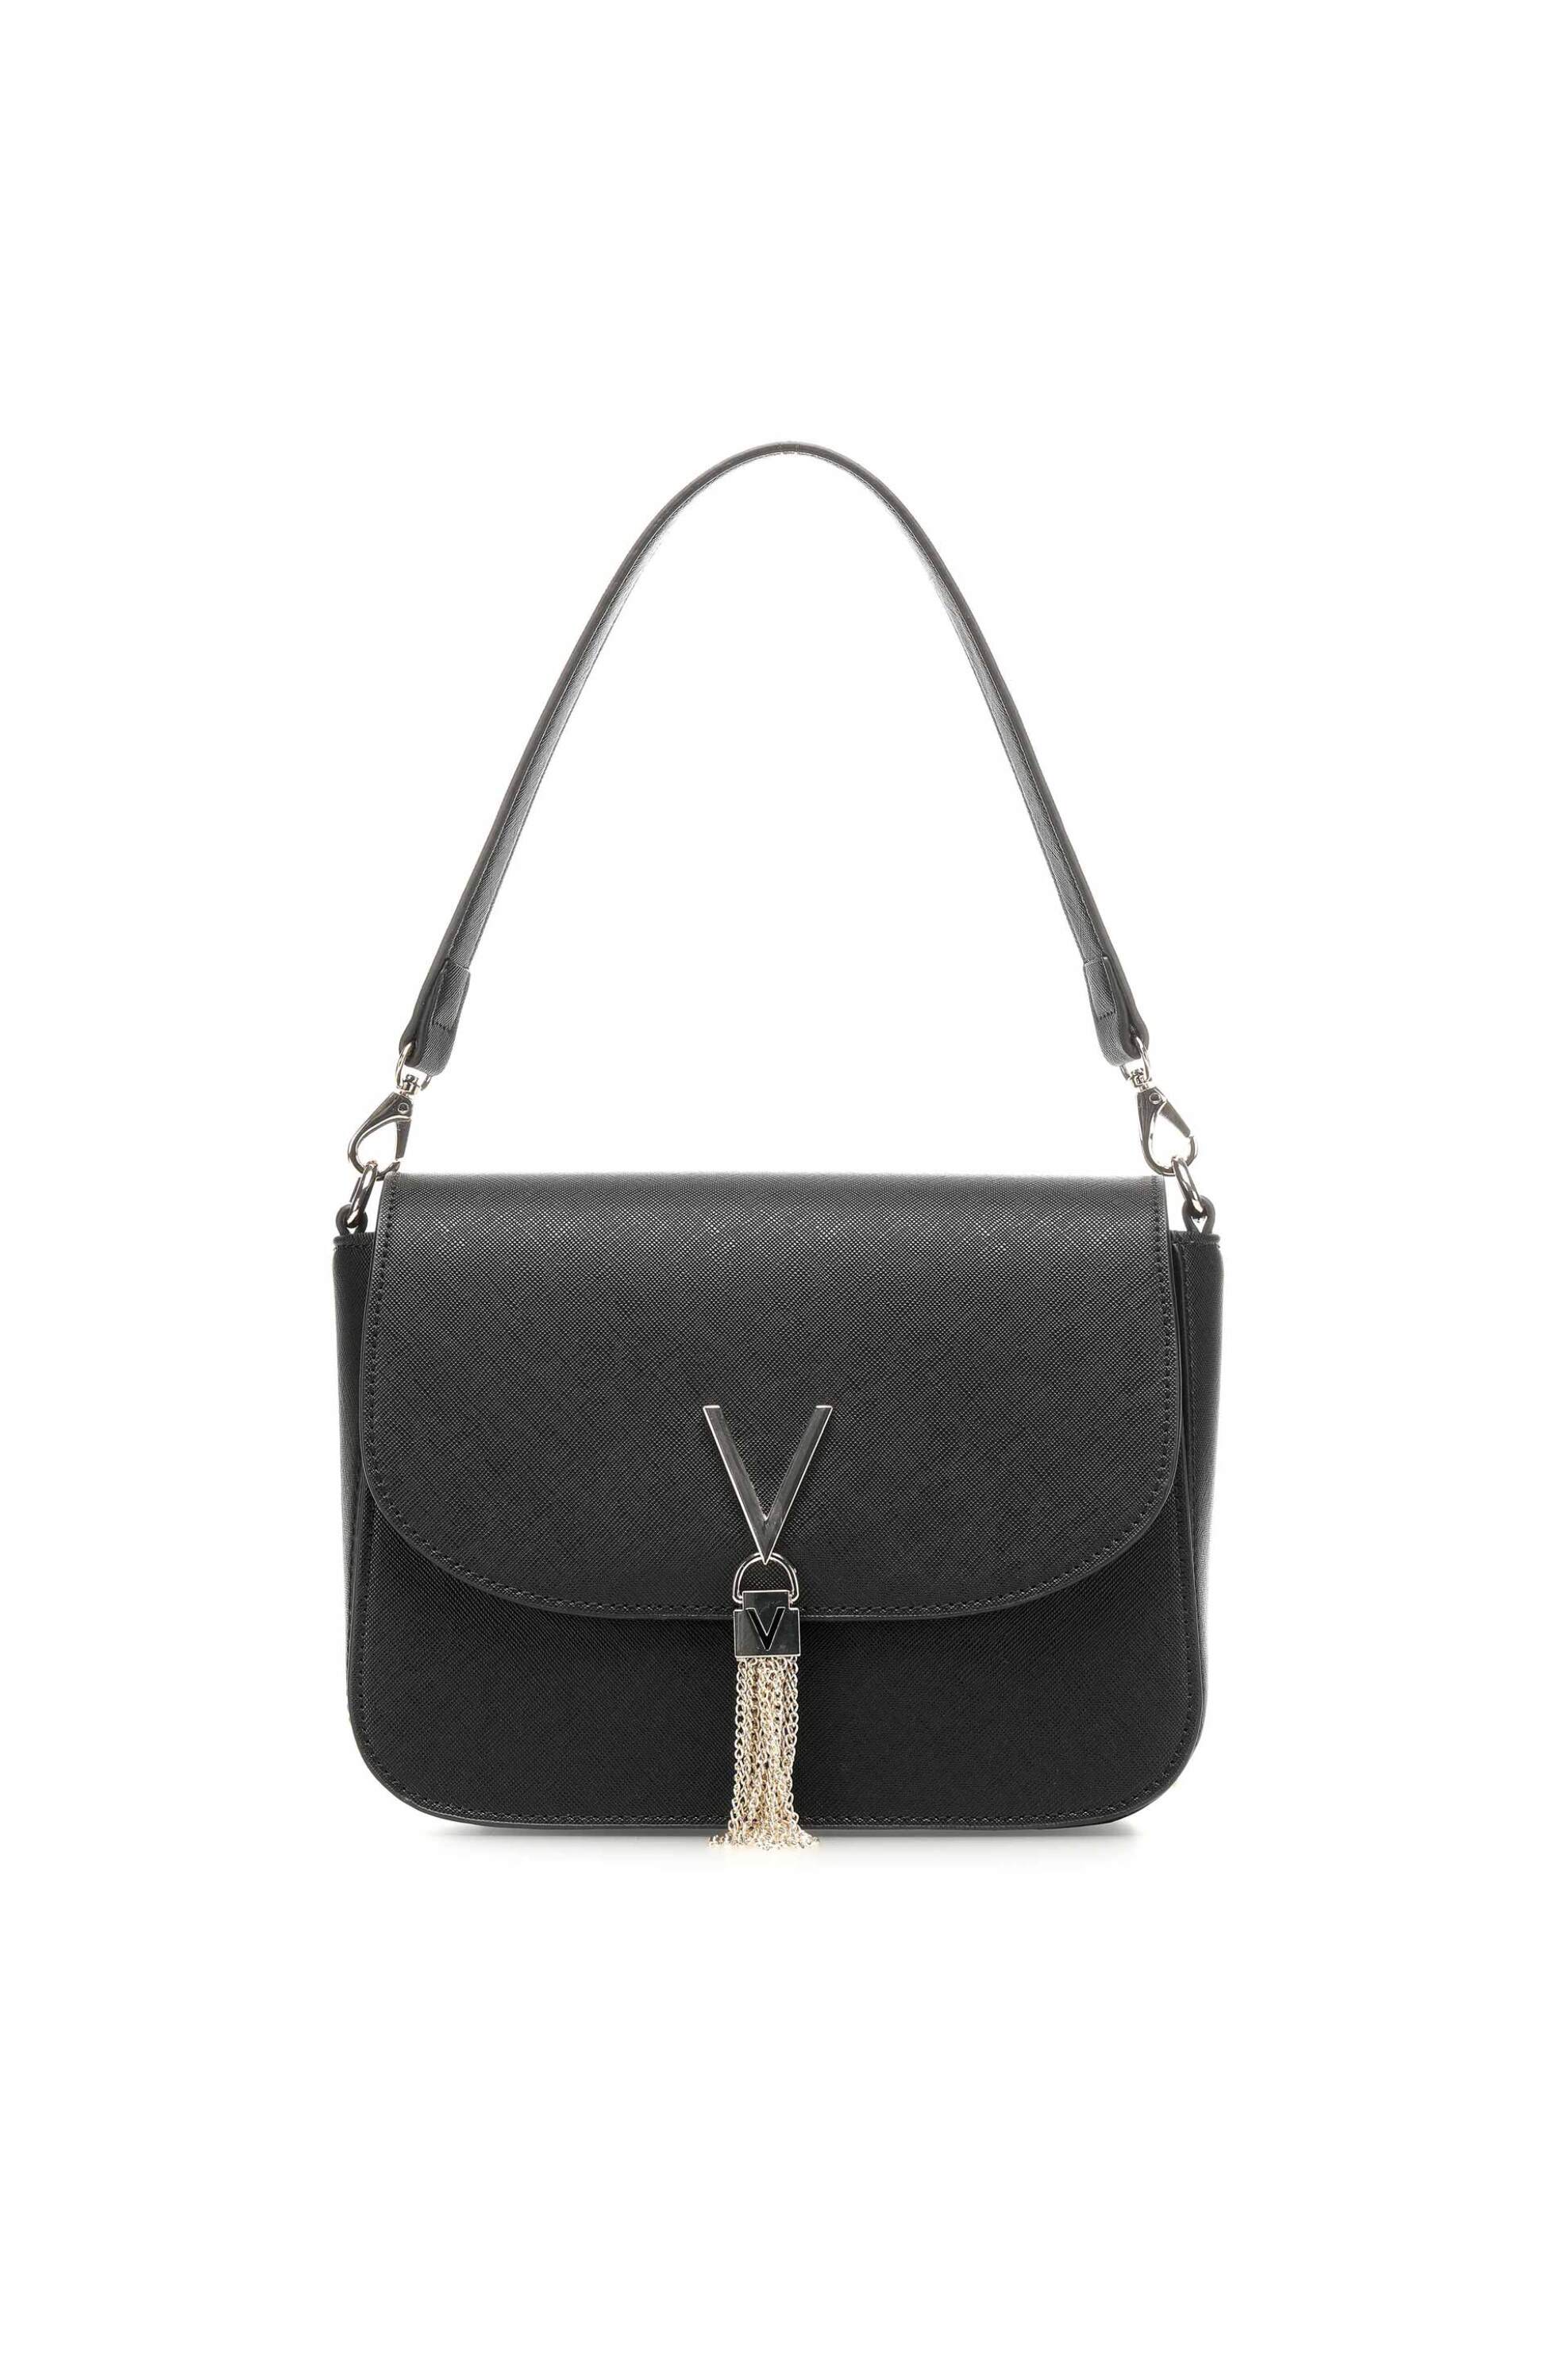 Γυναίκα > ΤΣΑΝΤΕΣ > Τσάντες Ώμου & Shopper Bags Valentino γυναικεία τσάντα ώμου μονόχρωμη με μεταλλικές λεπτομέρειες "Divina Sa" - 55KVBS1IJ04/DIV Μαύρο